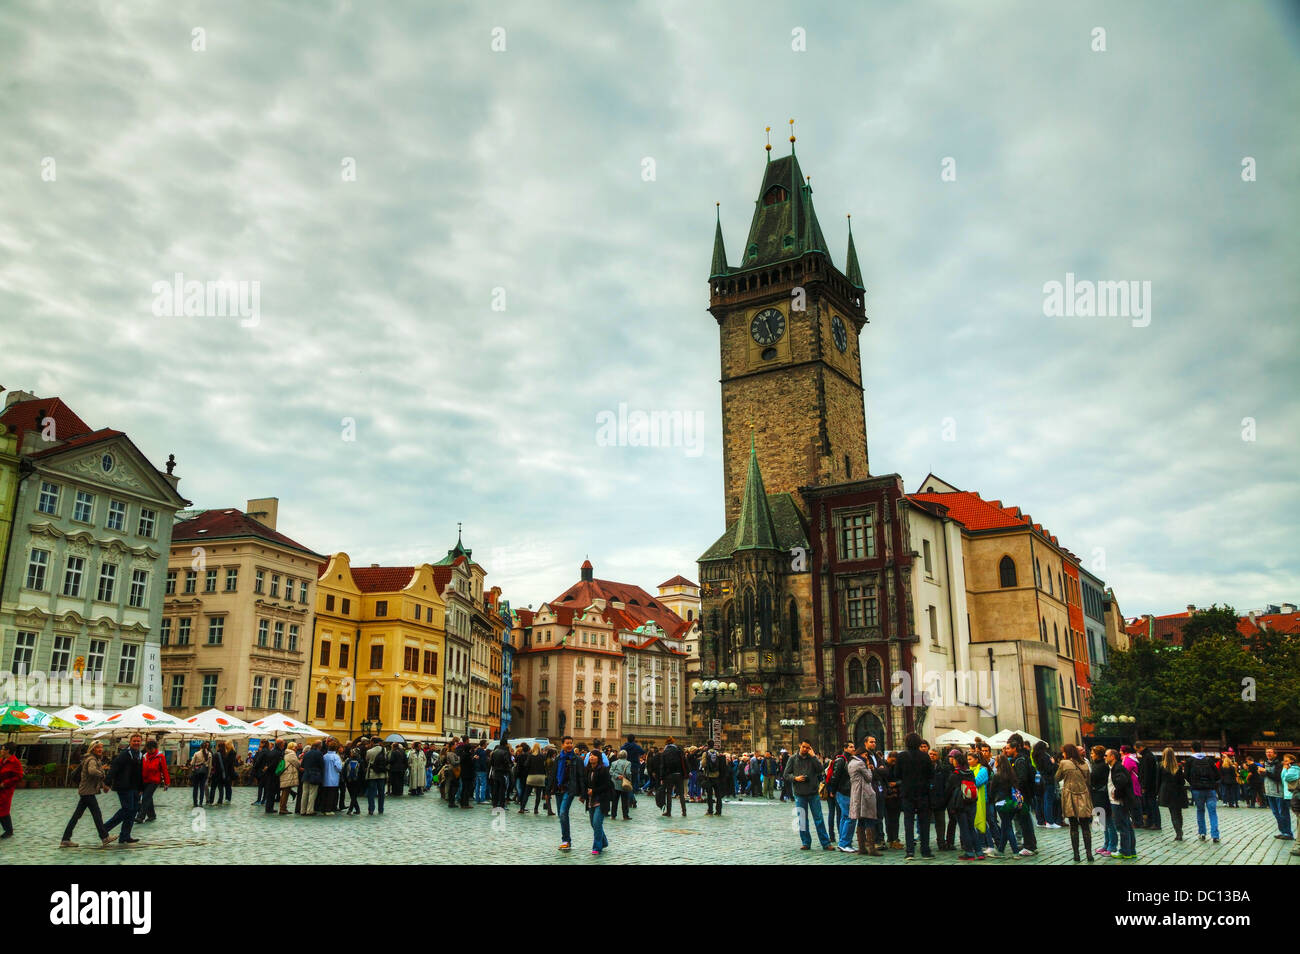 La place de la vieille ville, avec les touristes à Prague. Place de la vieille ville est une place historique dans la vieille ville. Banque D'Images